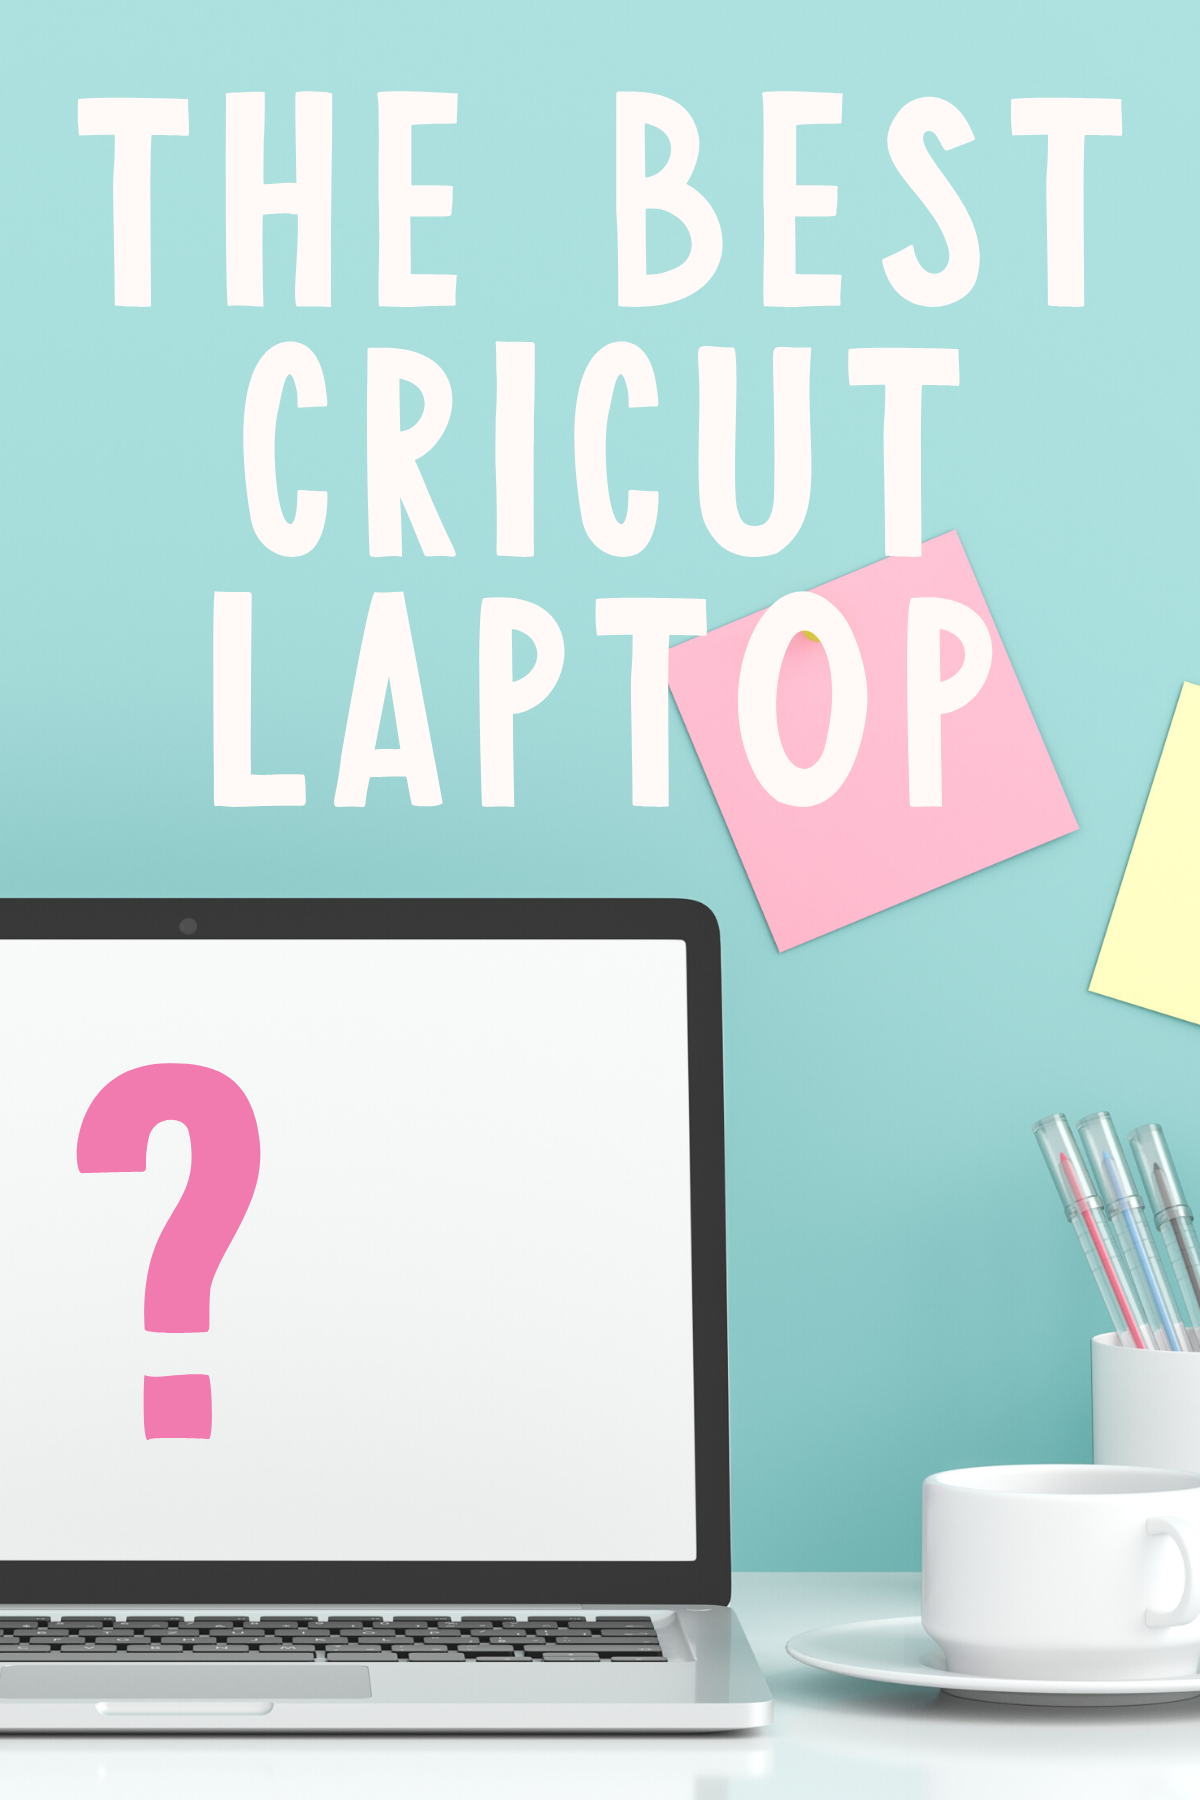 best laptop for cricut